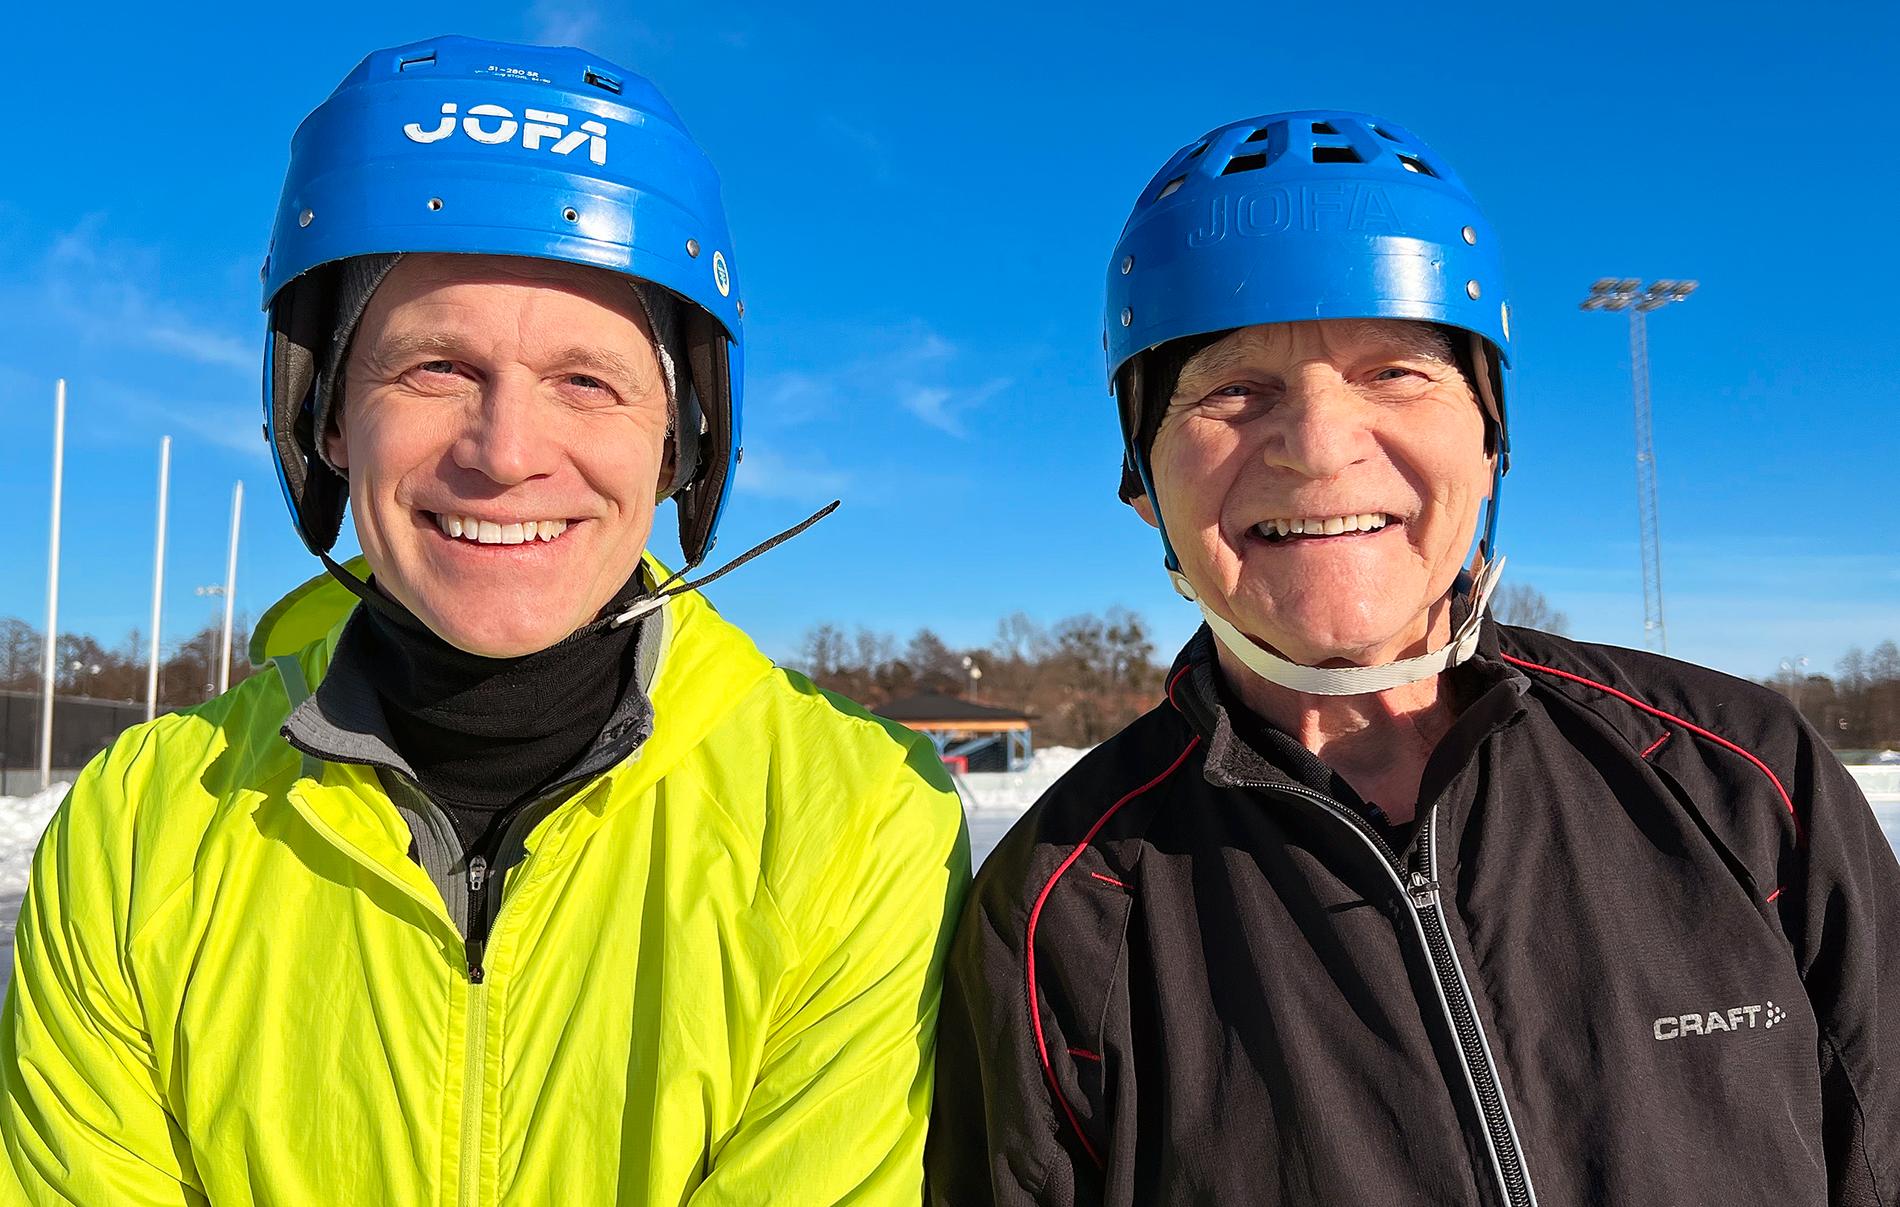 Sonen Joachim Öijwall, 55, och Matz Allan Johansson, 80. Tillsammans spelar de bandy på Hakonplan nästan varje dag.